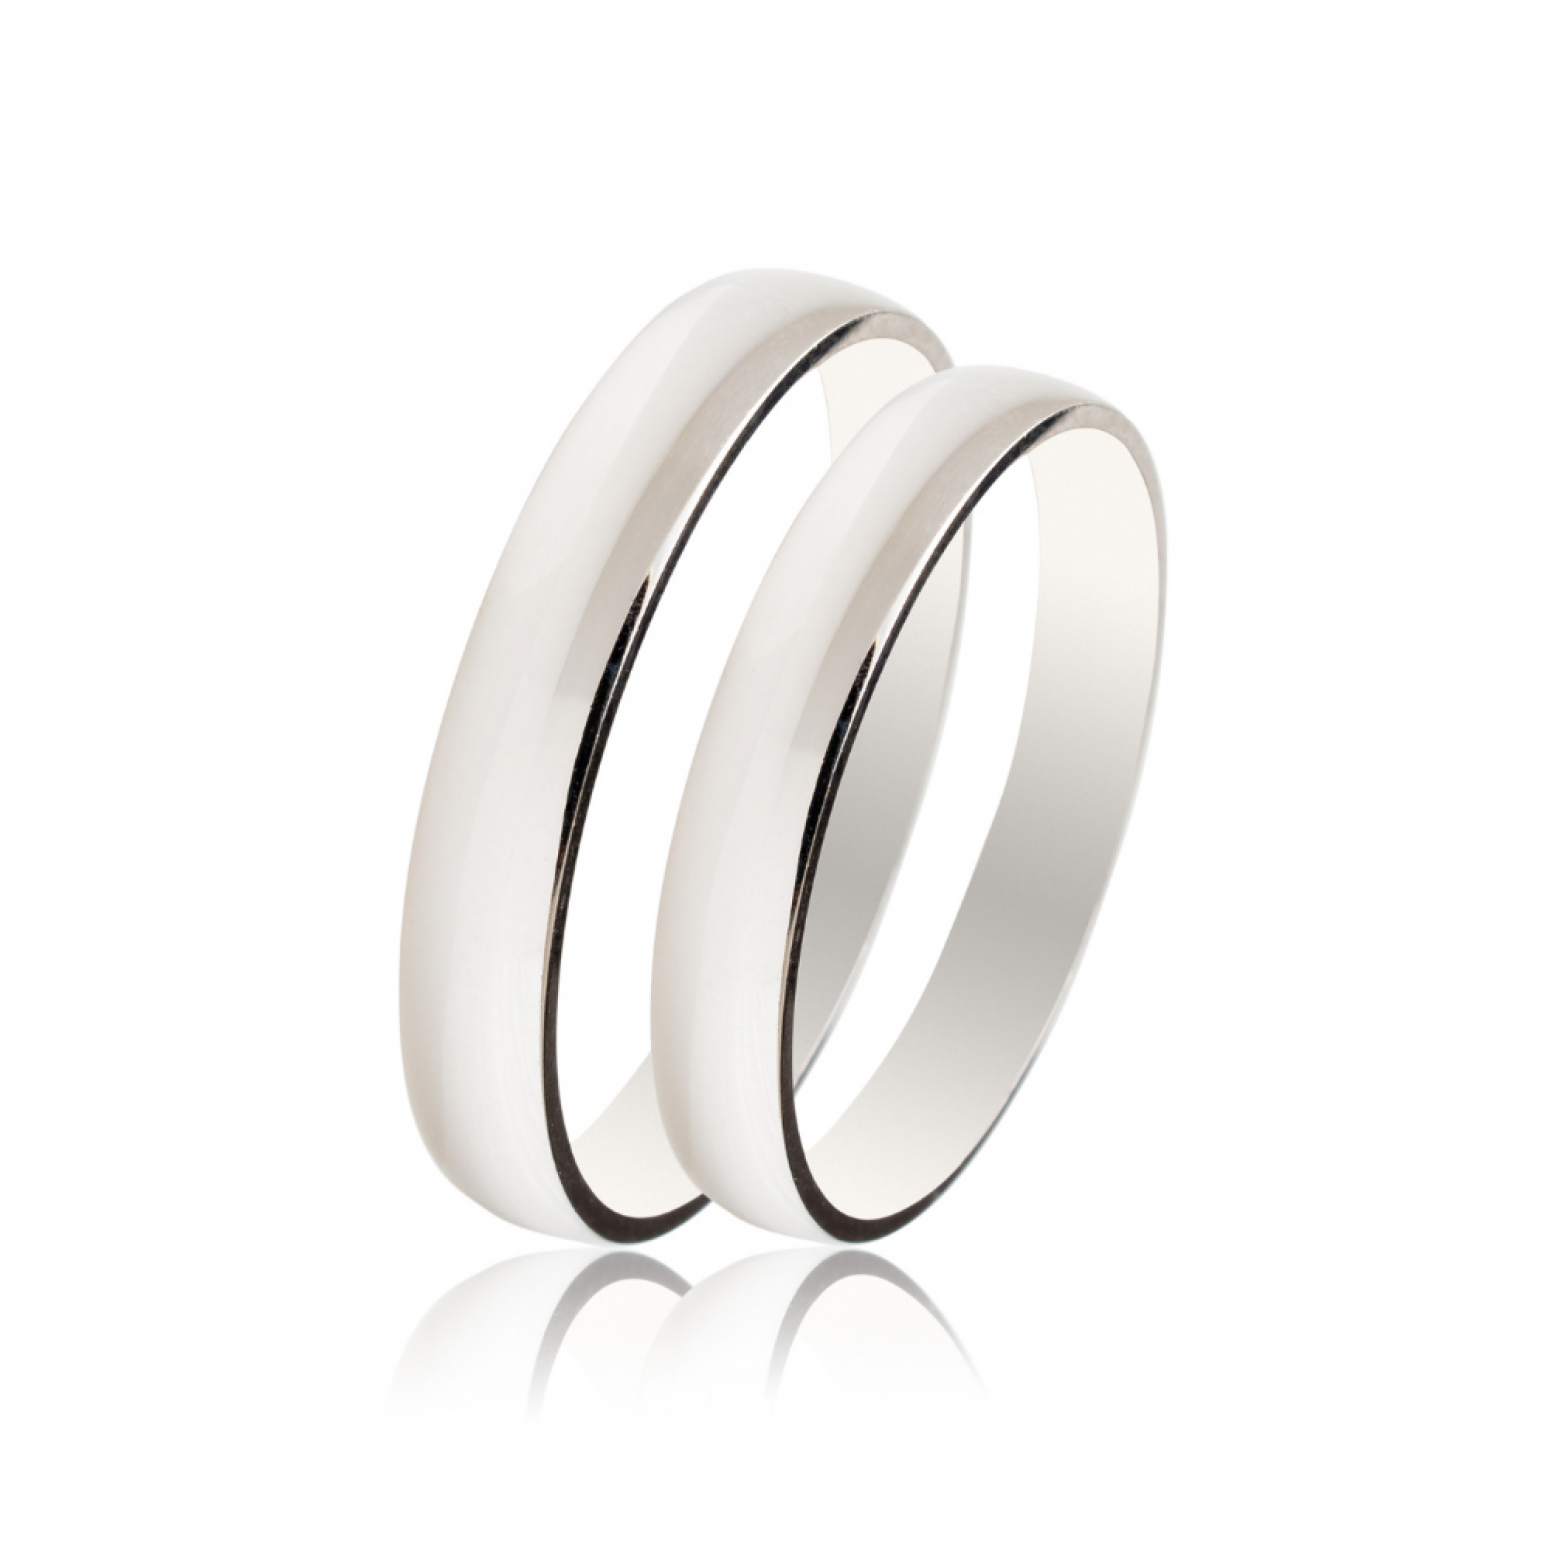 Maschio Femmina wedding rings in white gold, K9, pair da4026 WEDDING RINGS Κοσμηματα - chrilia.gr